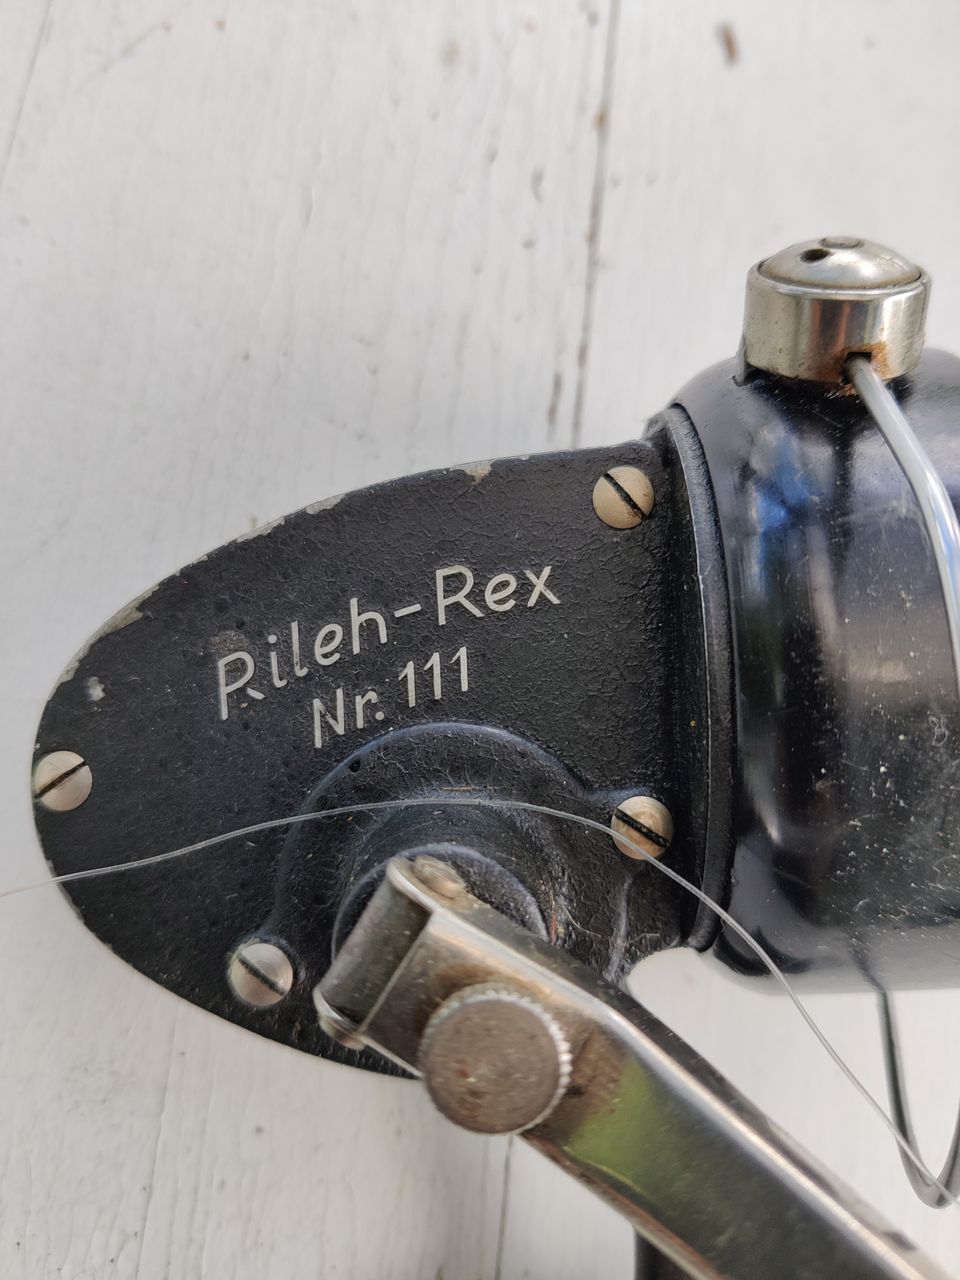 Rileh-Rex Nr. 111 haspelikela